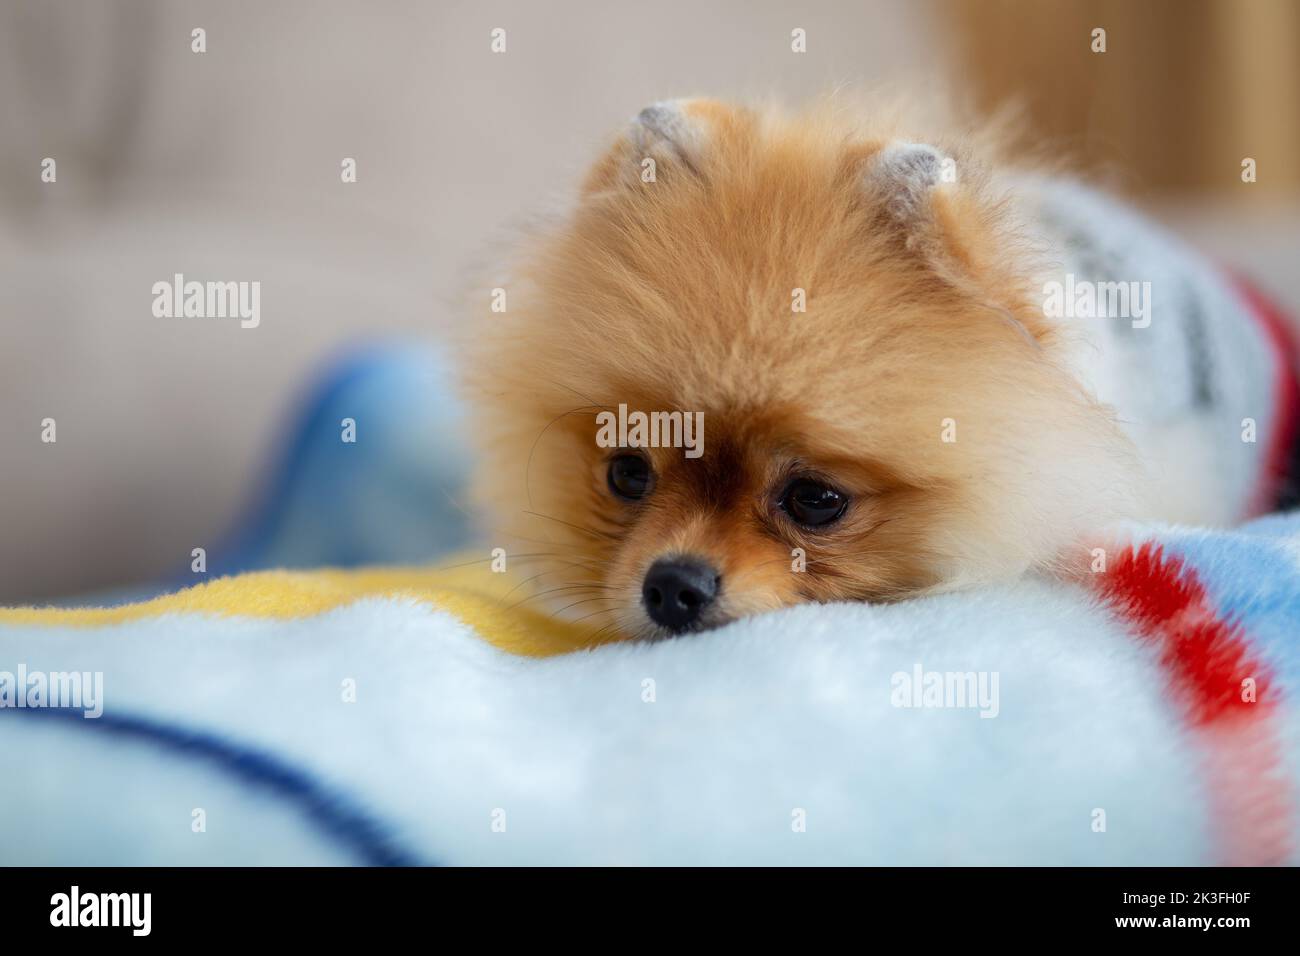 Le chien de Pomeranian se tient sur un sol blanc, un chien brun clair. Amour des animaux Banque D'Images